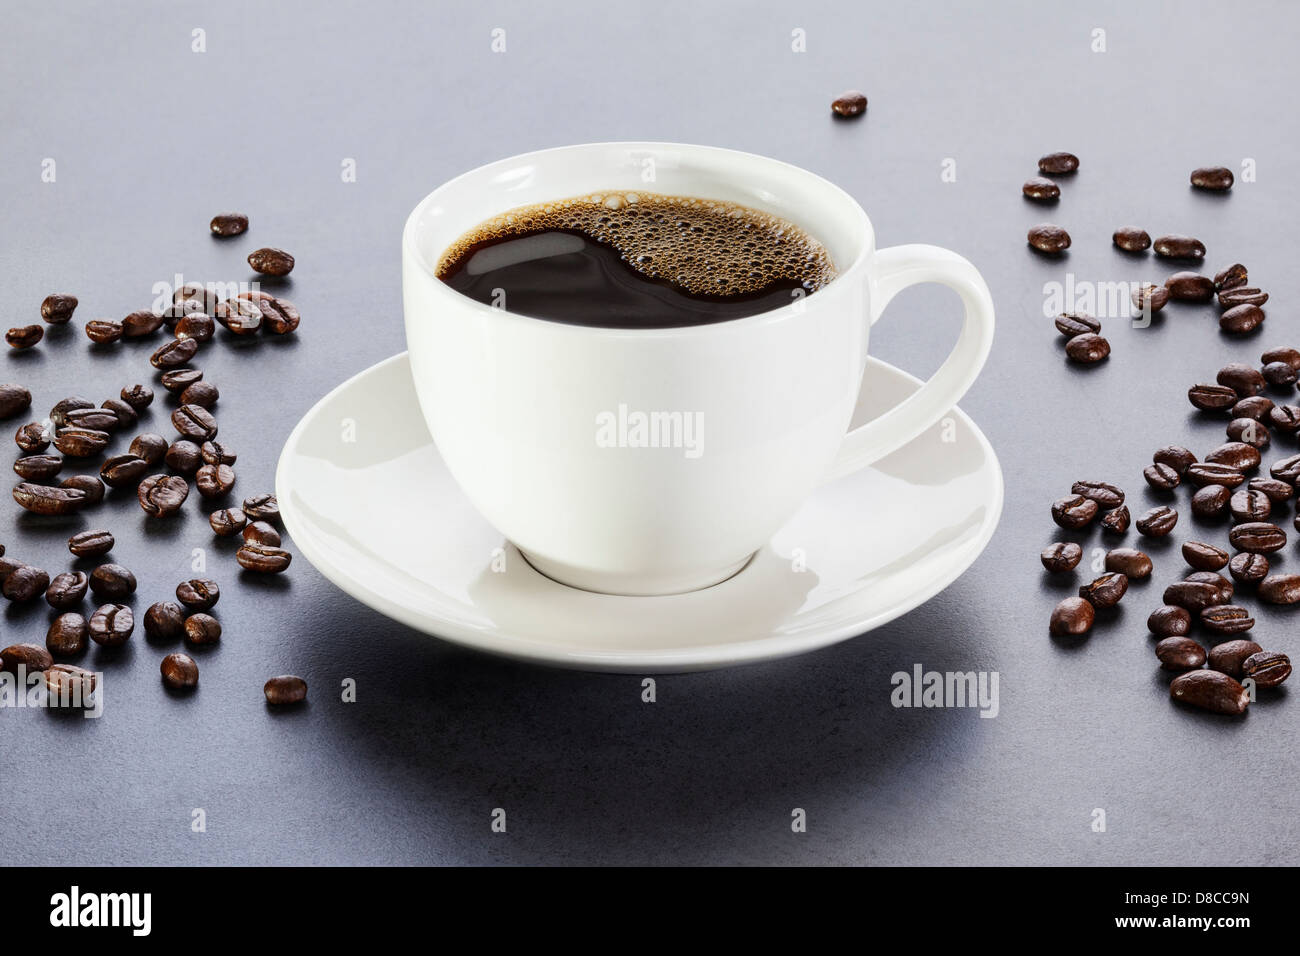 Kaffee - Tasse Espresso oder Kaffee auf einem grauen Hintergrund mit Kaffeebohnen verstreut. Von vorne nach hinten Fokus. Stockfoto